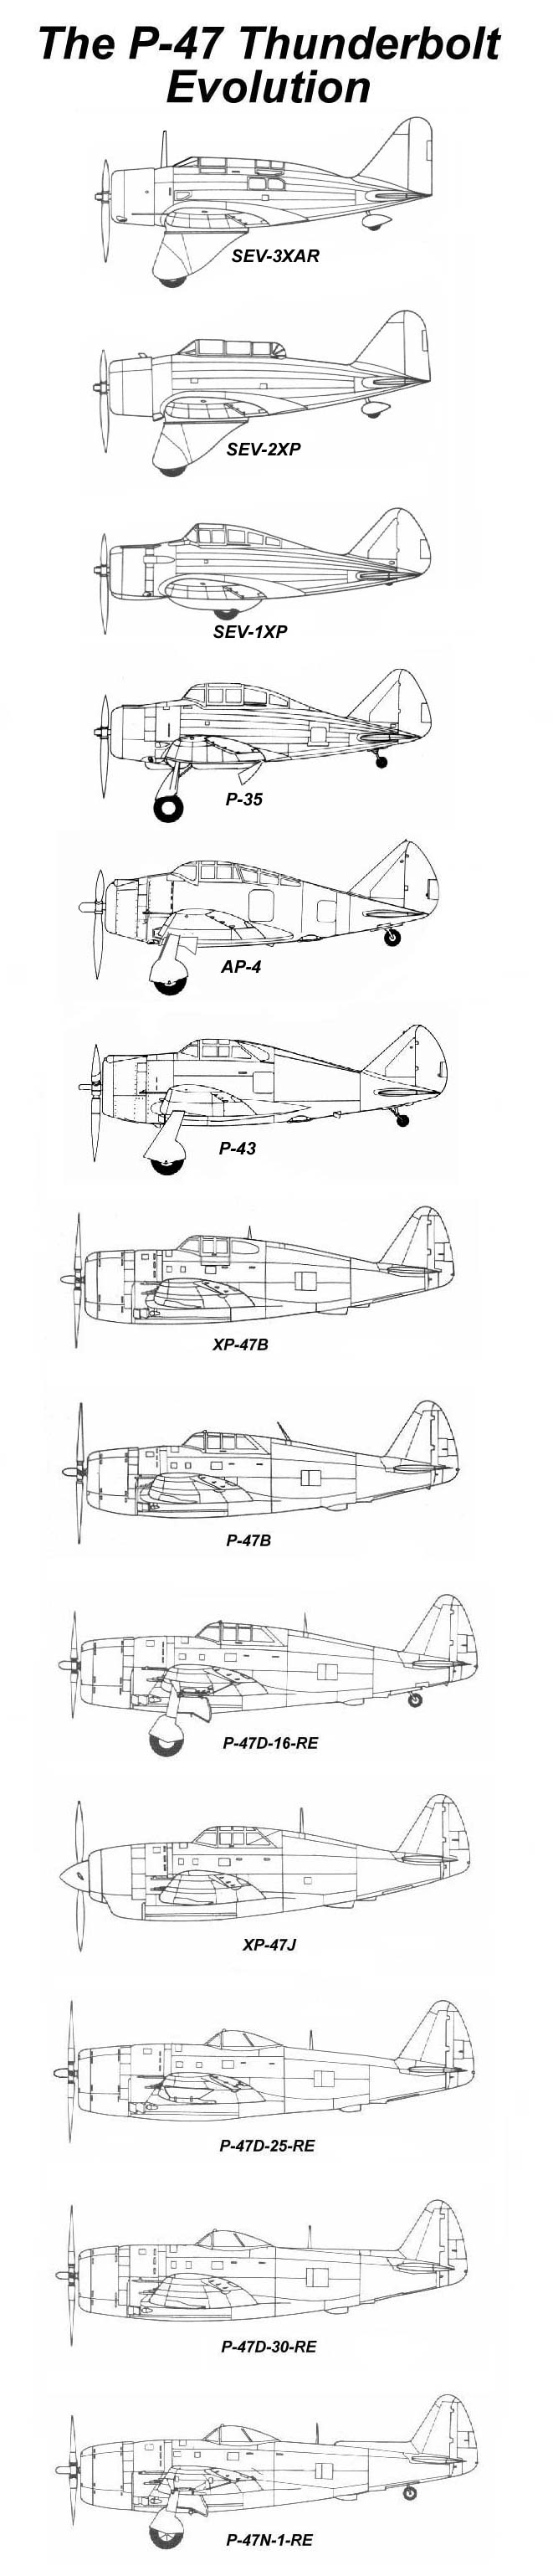 The P-47 evolution: XP-47B through the P-47N